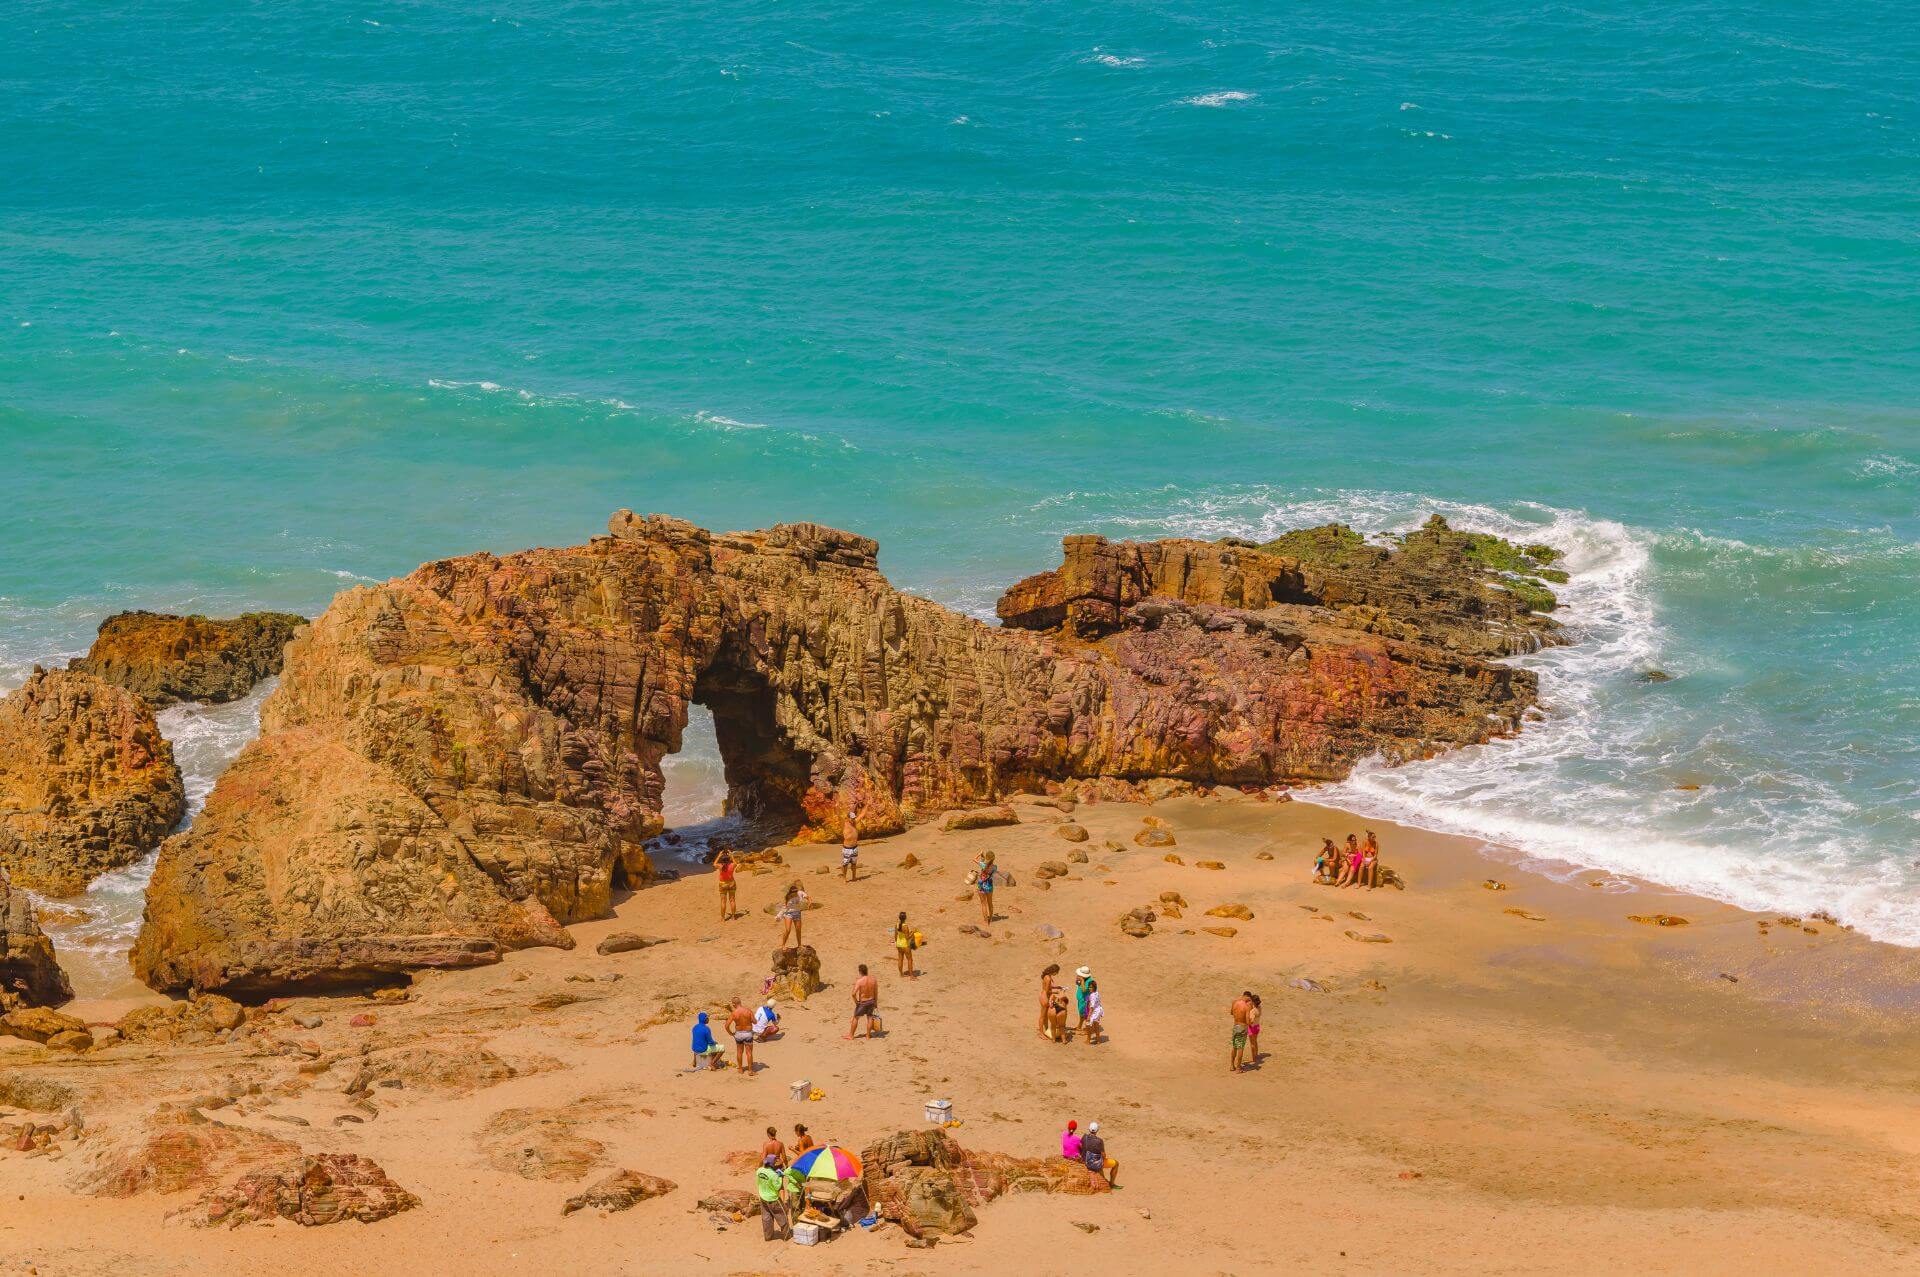 Essa encantadora região do Ceará abriga praias paradisíacas, piscinas naturais de água doce, muitas atrações para os turistas e aventuras beira-mar. O passeio vai encantar quem procura vivenciar o agito praiano e contemplar uma das paisagens naturais mais bonitas do Brasil.